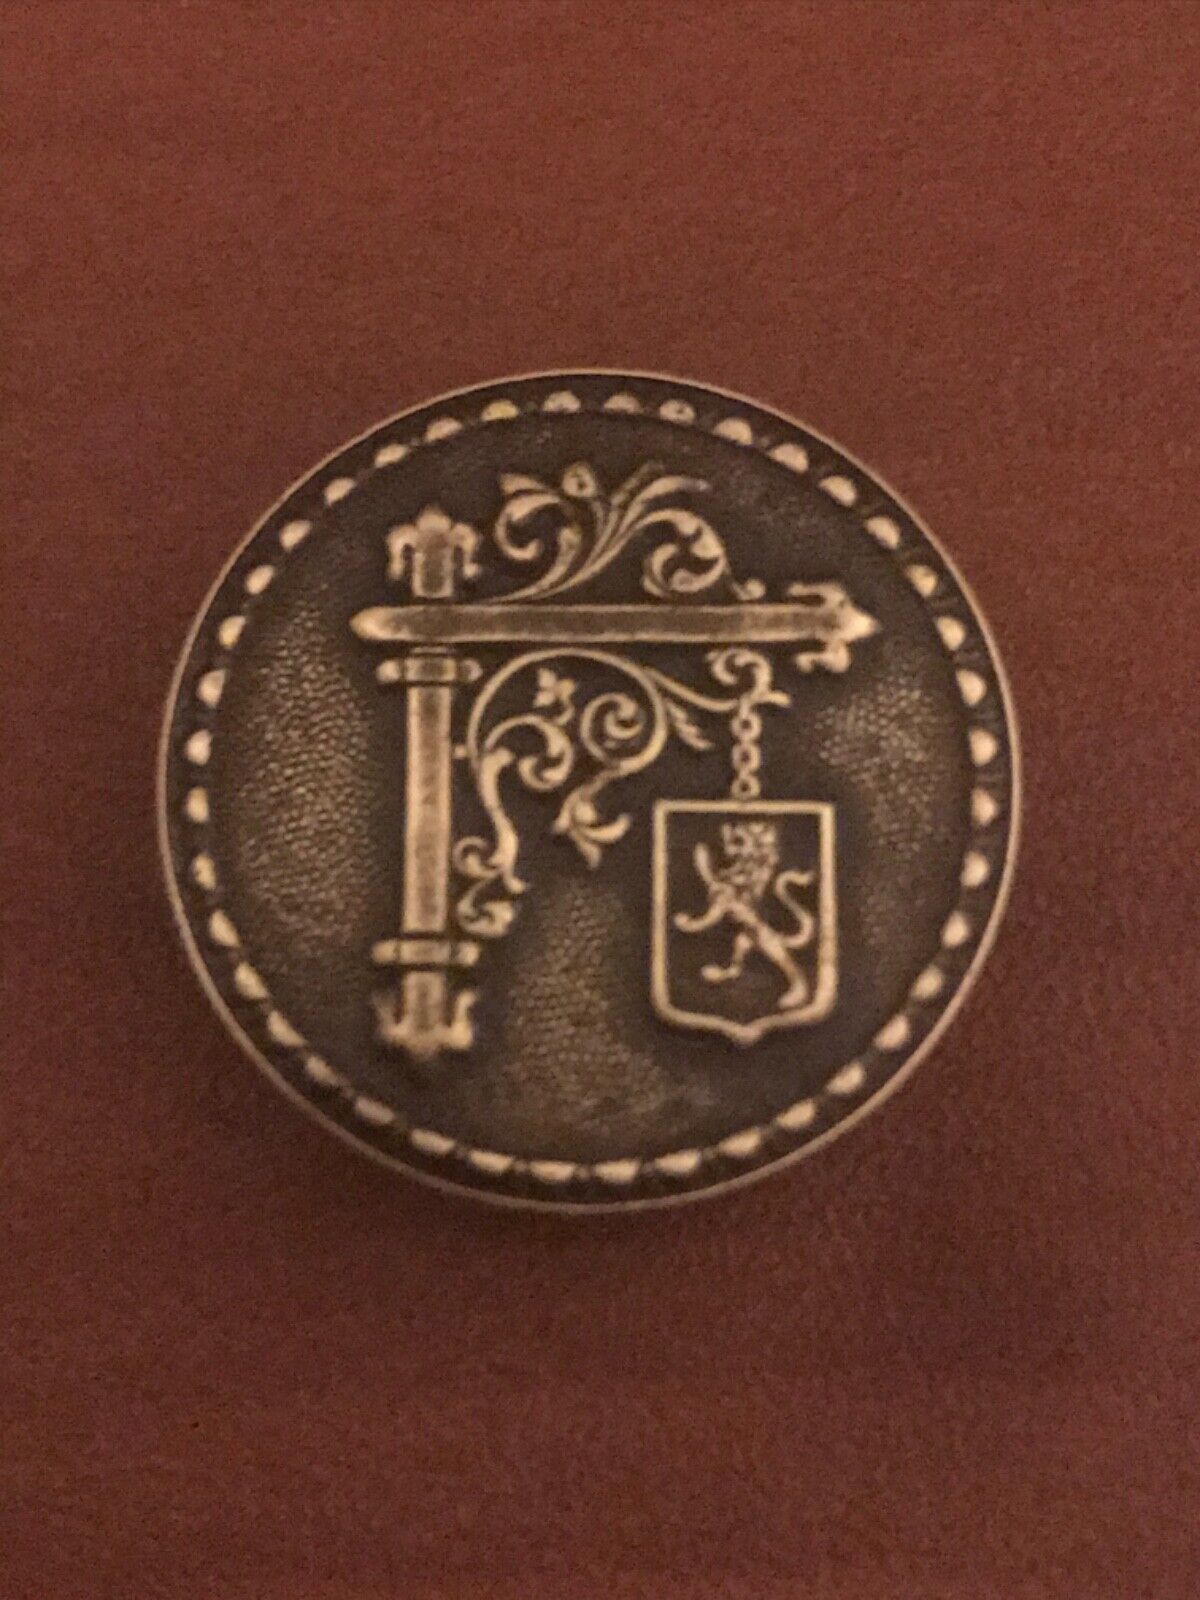 Rare Vintage Original Antique French Uniform Metal Button Peugeot Paris VGC